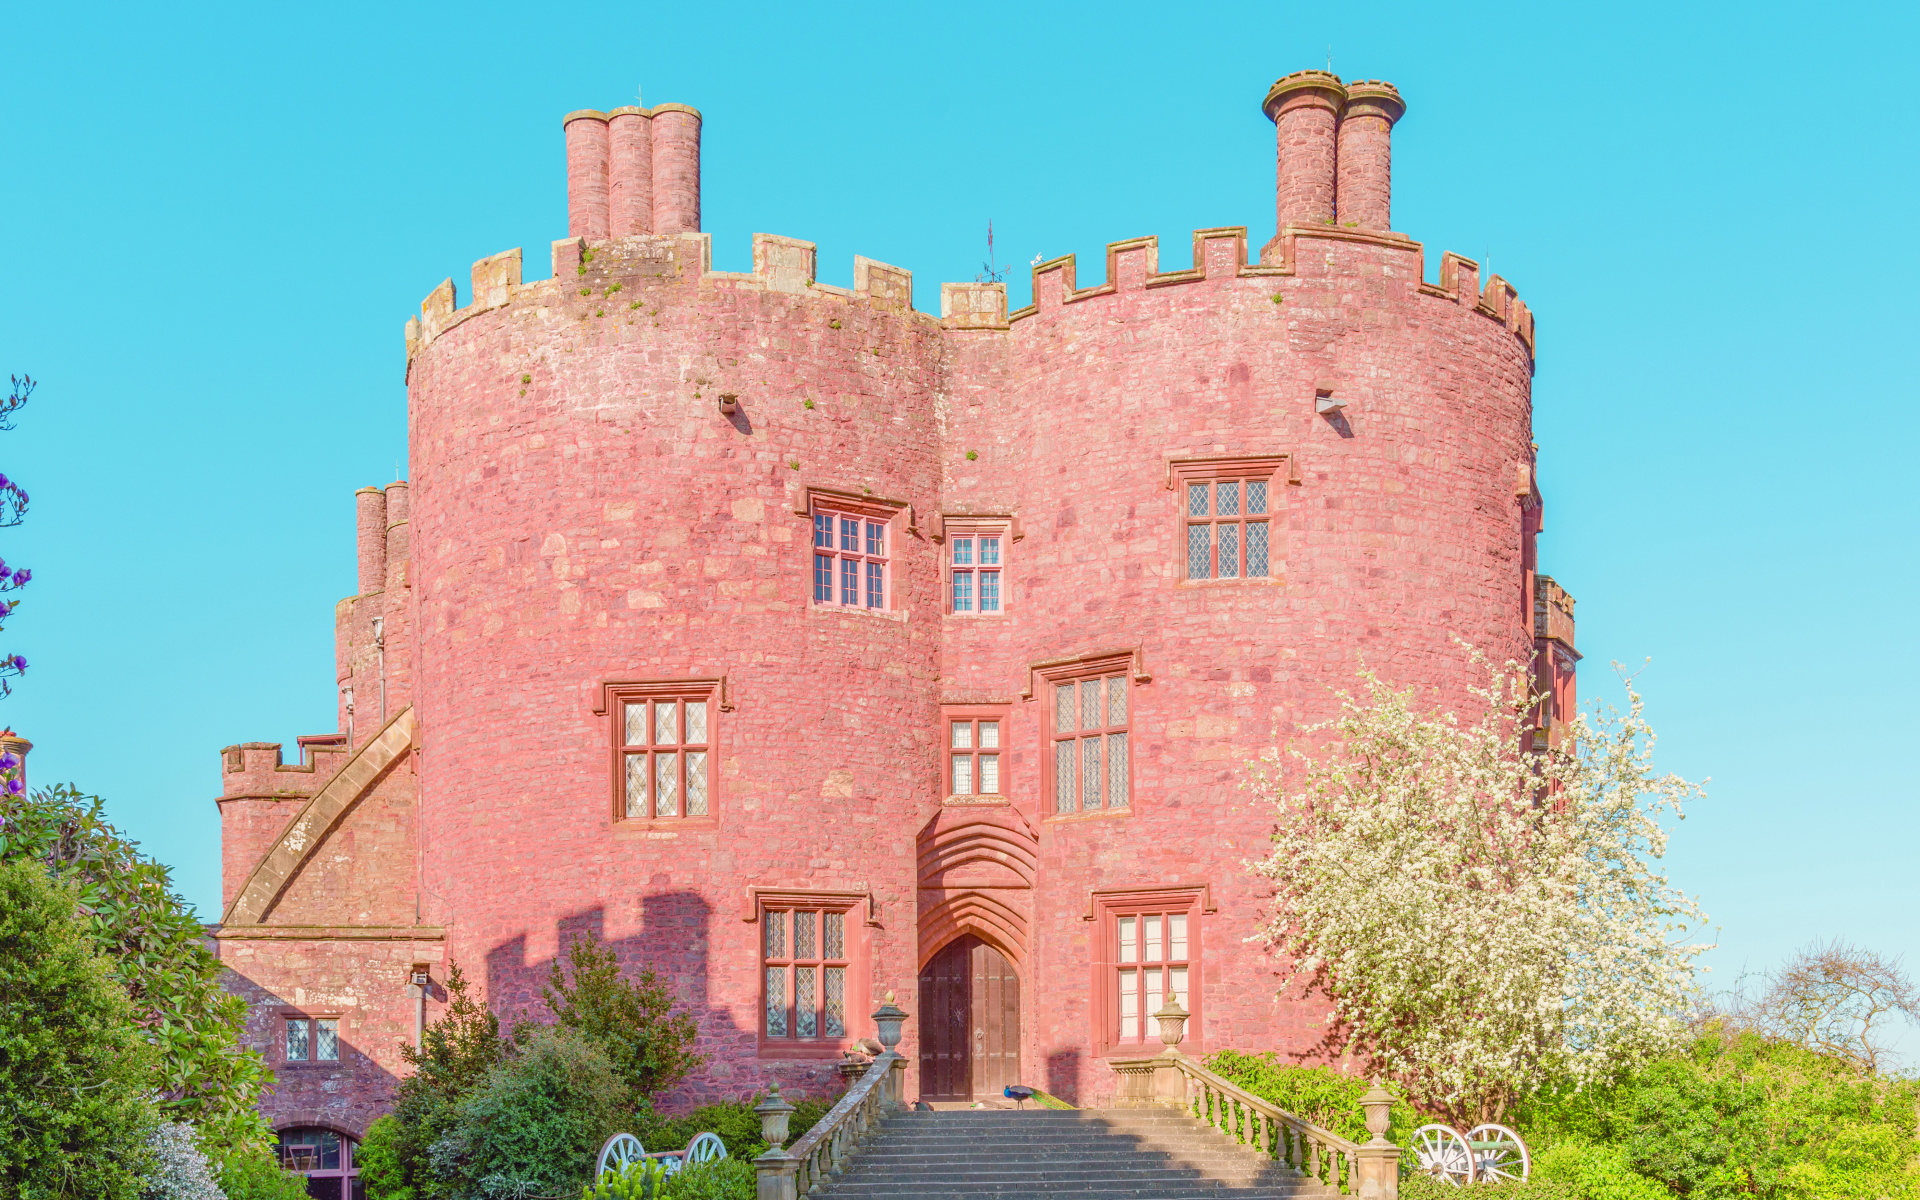 Castle Powis Castle in Welshpool, Wales. United Kingdom